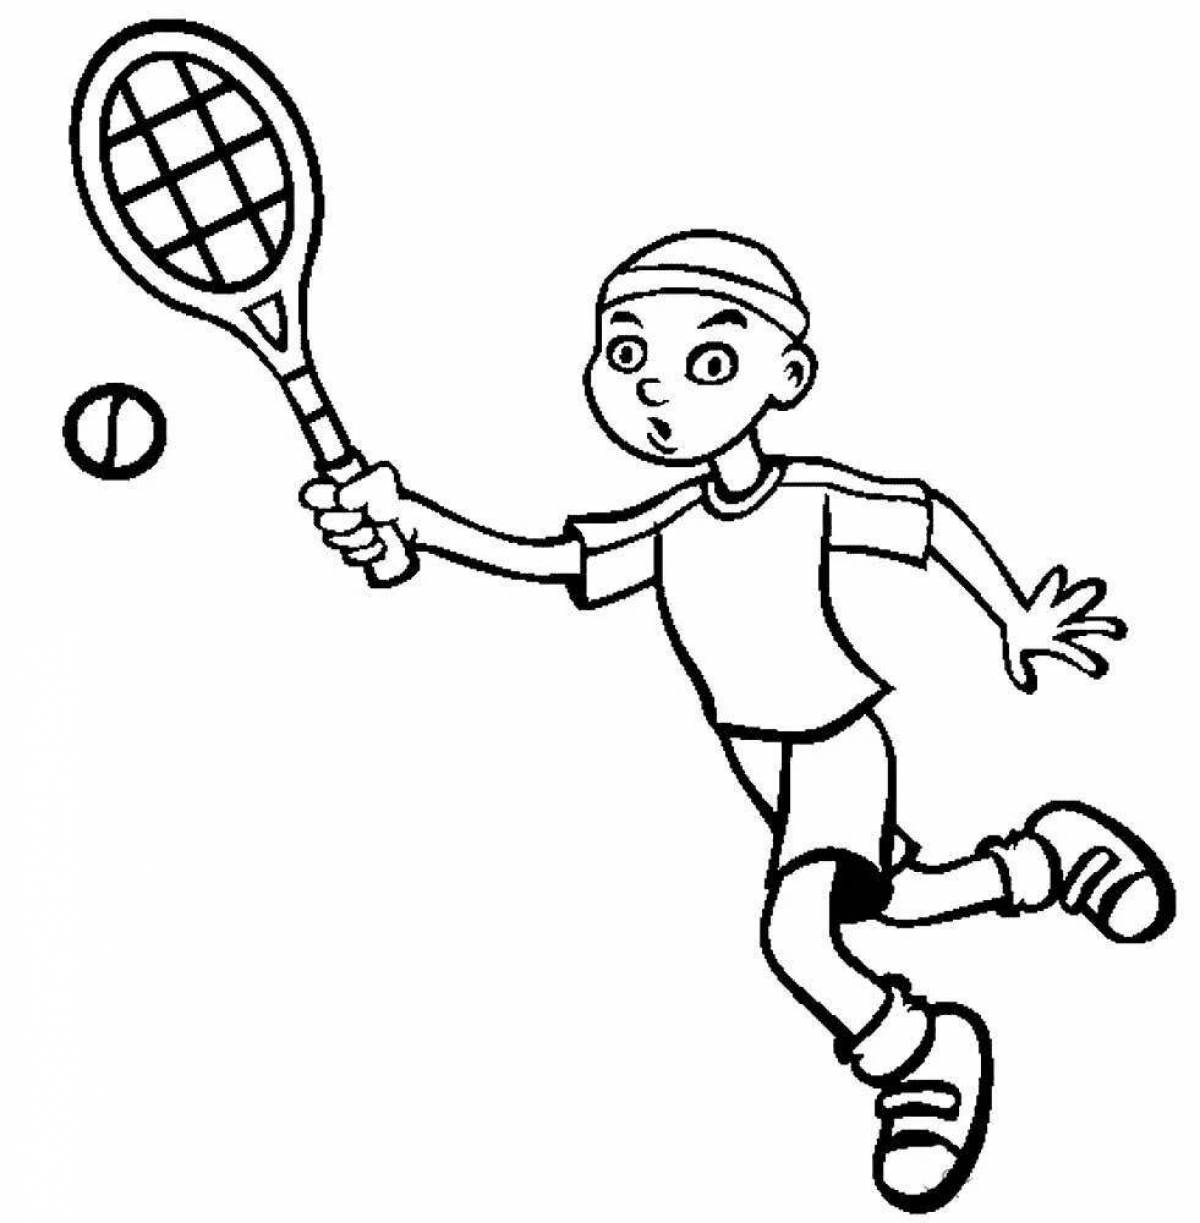 Изображения по запросу Бесплатные печатные раскраски тенниса